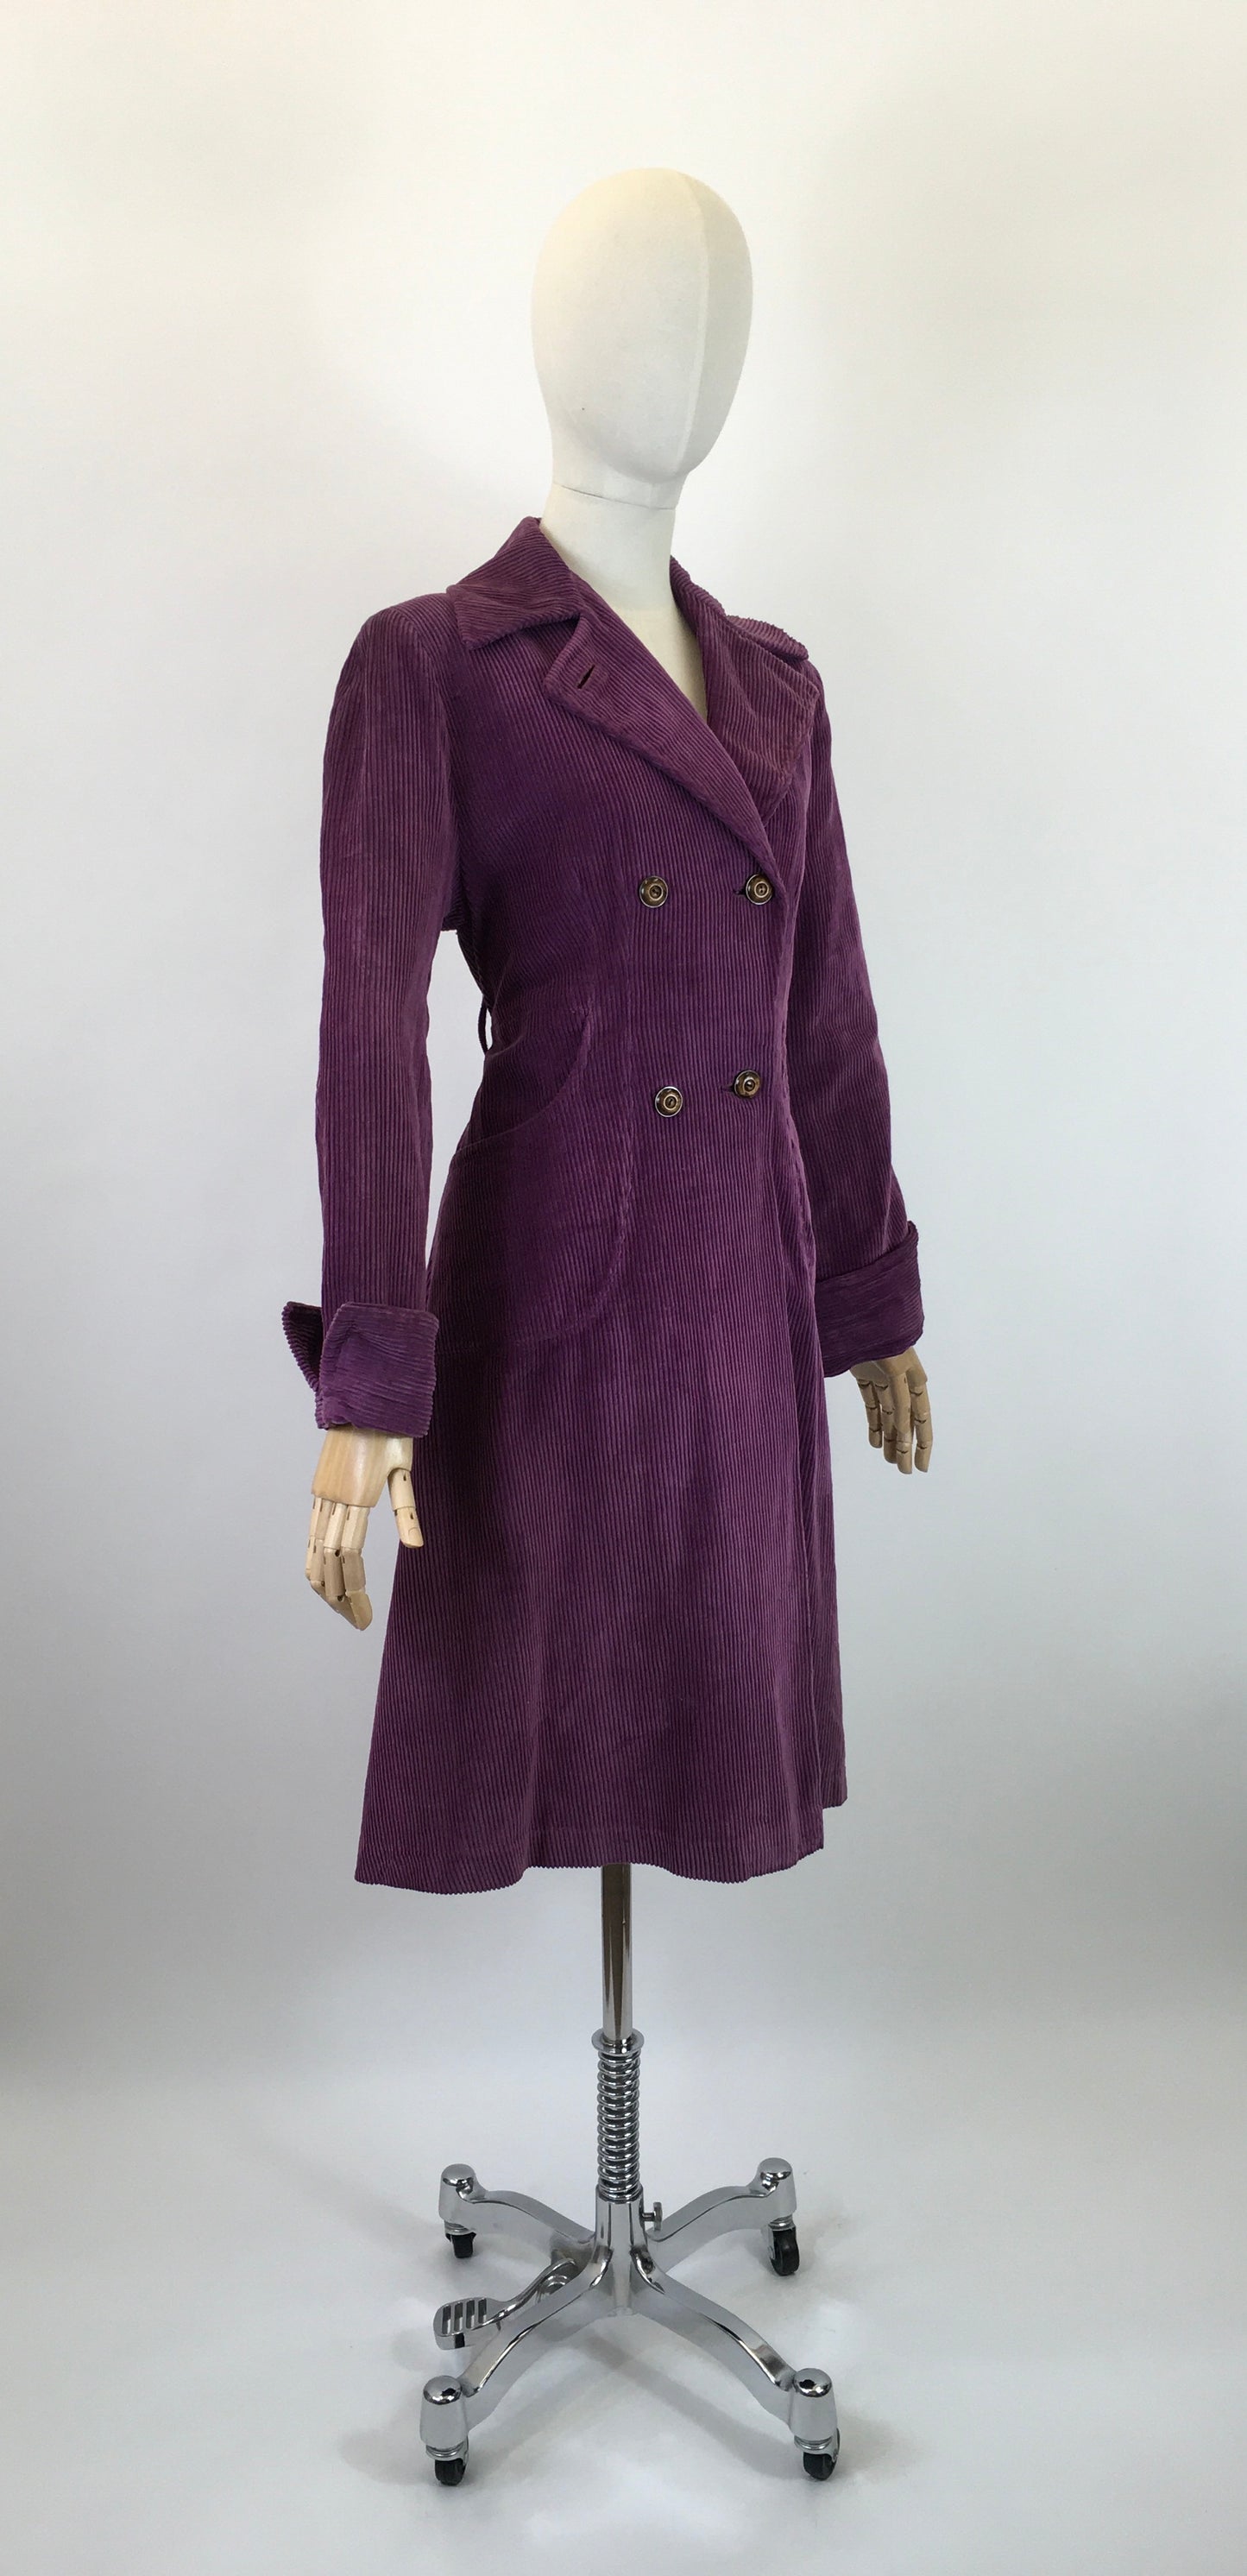 Original Stunning 1940’s Fine Needlecord Coat - In A Divine Rich Purple Colour